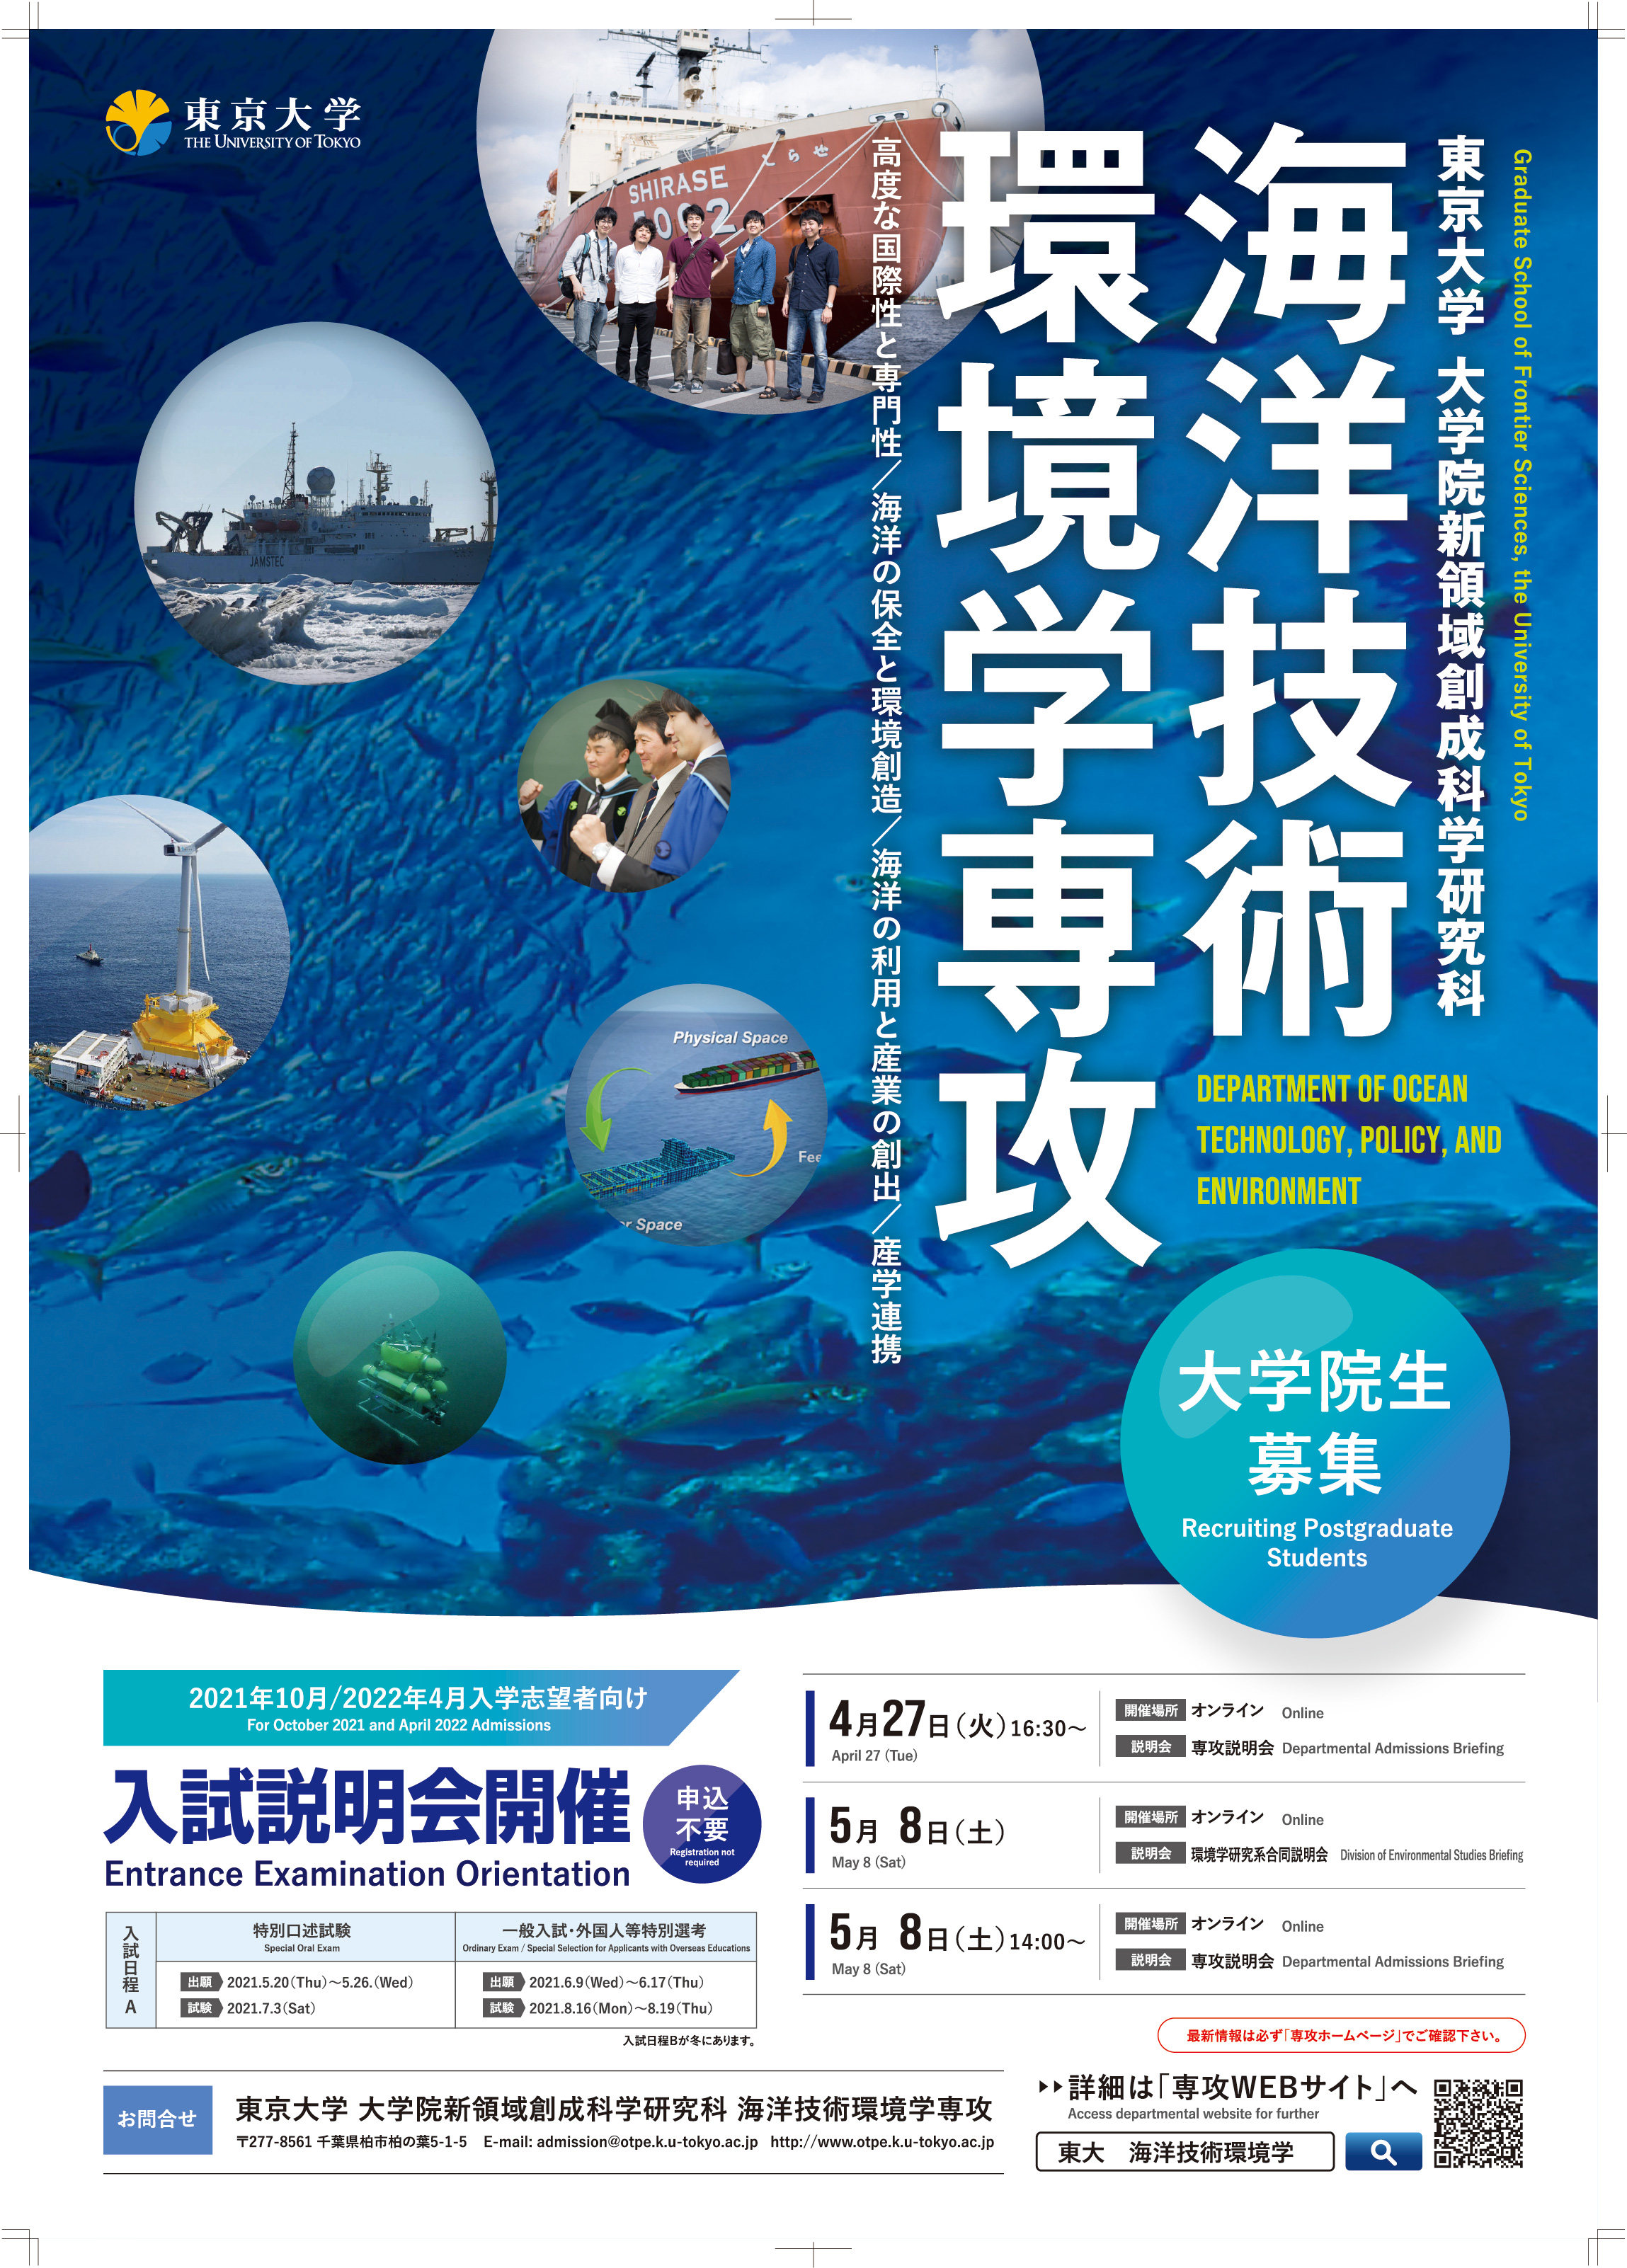 東京大学大学院新領域創成科学研究科 海洋技術環境学専攻様